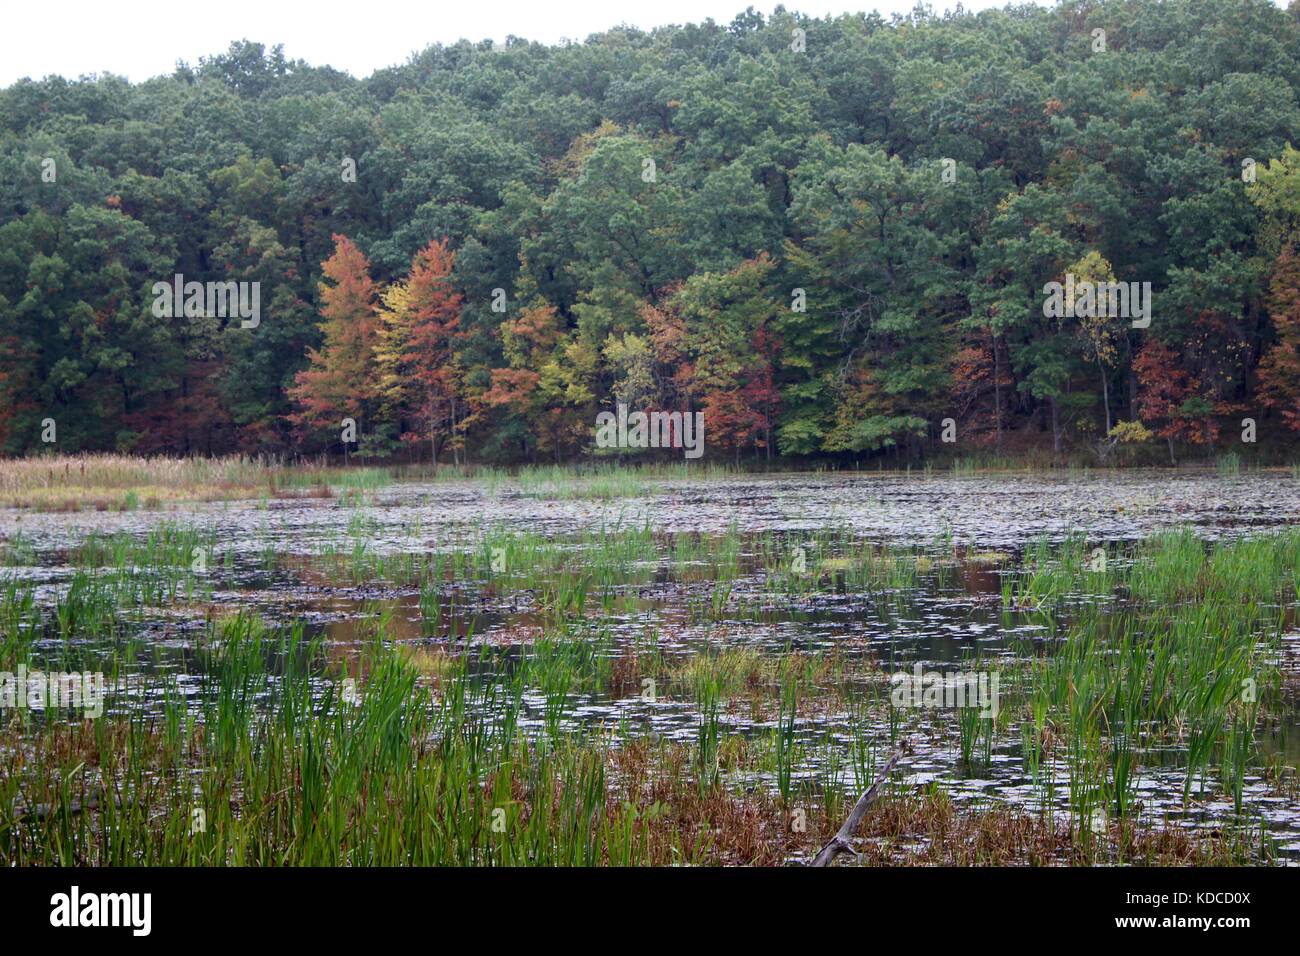 Ein Blick in die Natur des Waldes mit dem Fall Farben im Hintergrund die eine schöne Landschaft Foto Stockfoto